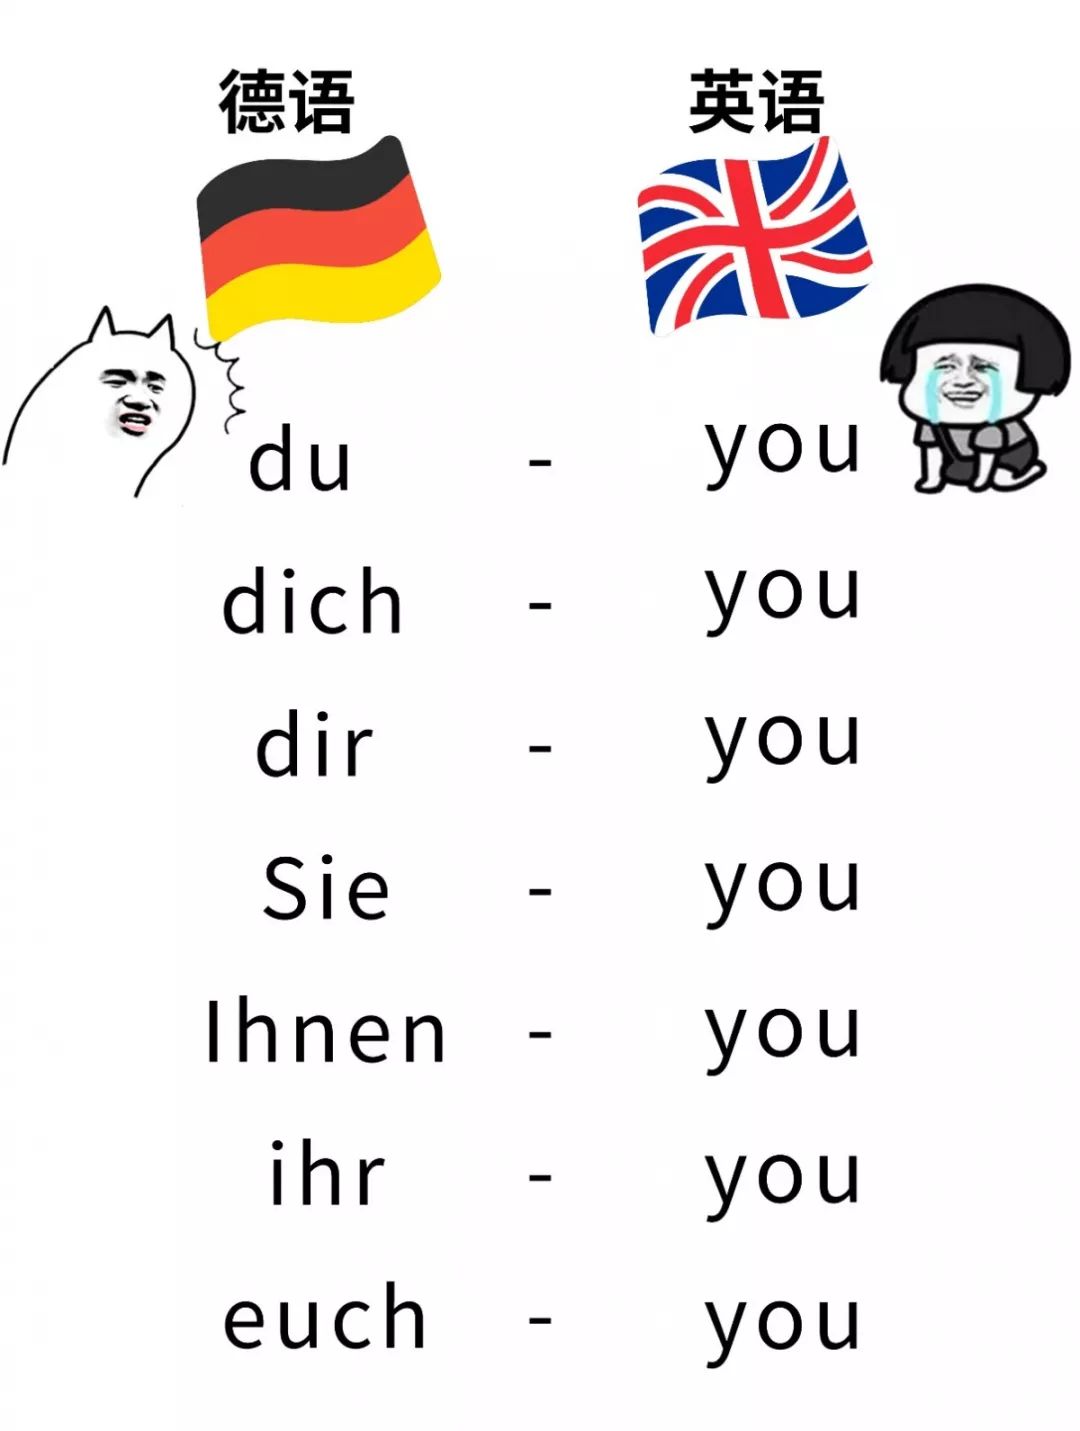 学德语是一种怎样的体验?